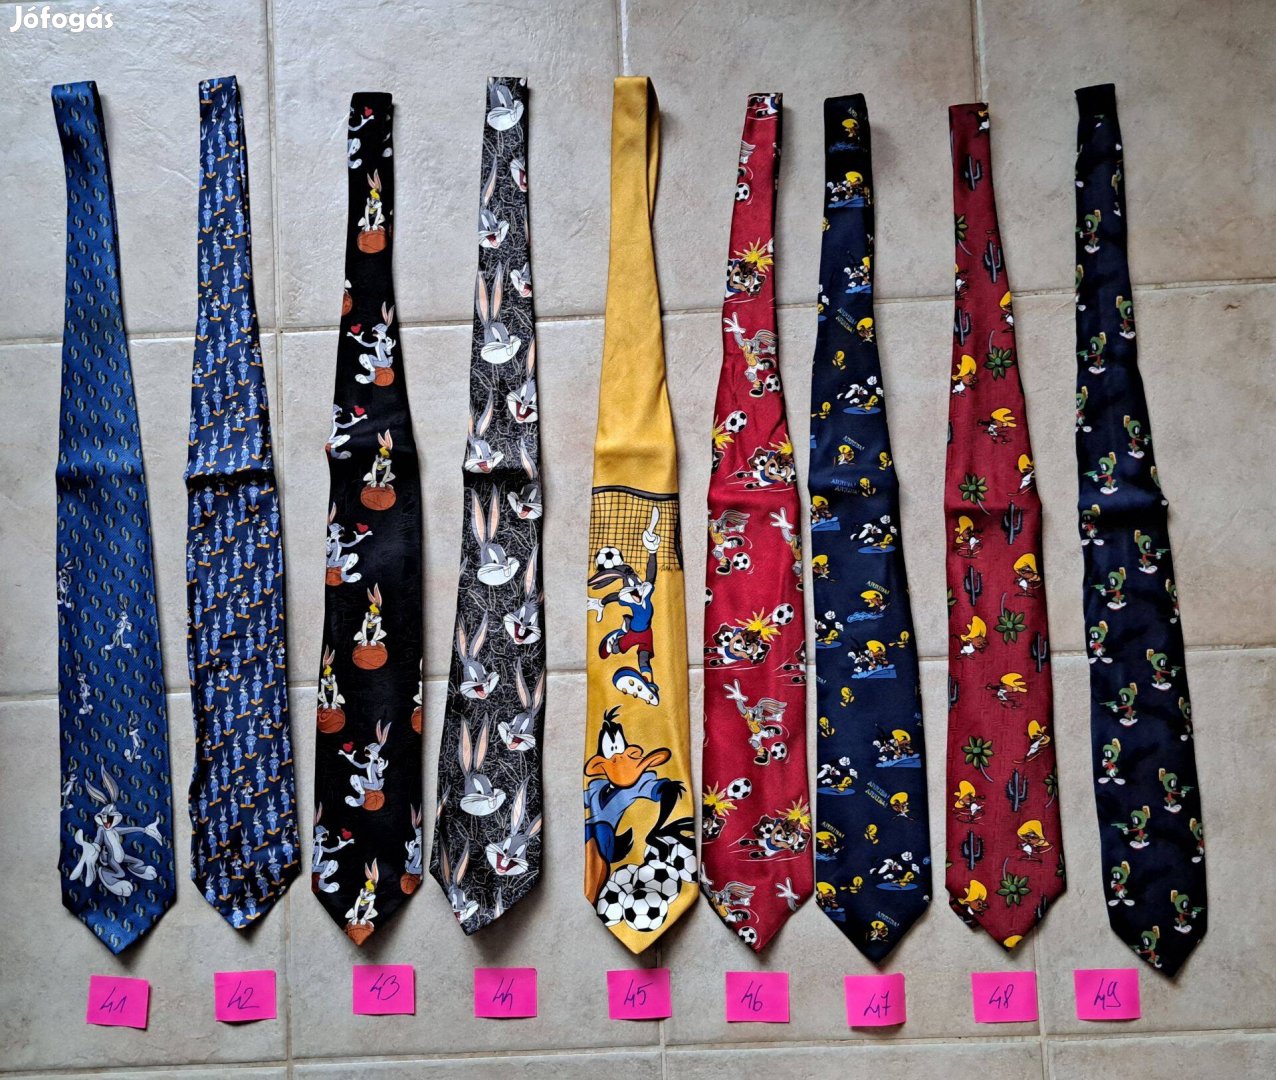 Looney Tunes mesefigurás mintázatú nyakkendő nyakkendők gyűjtemény